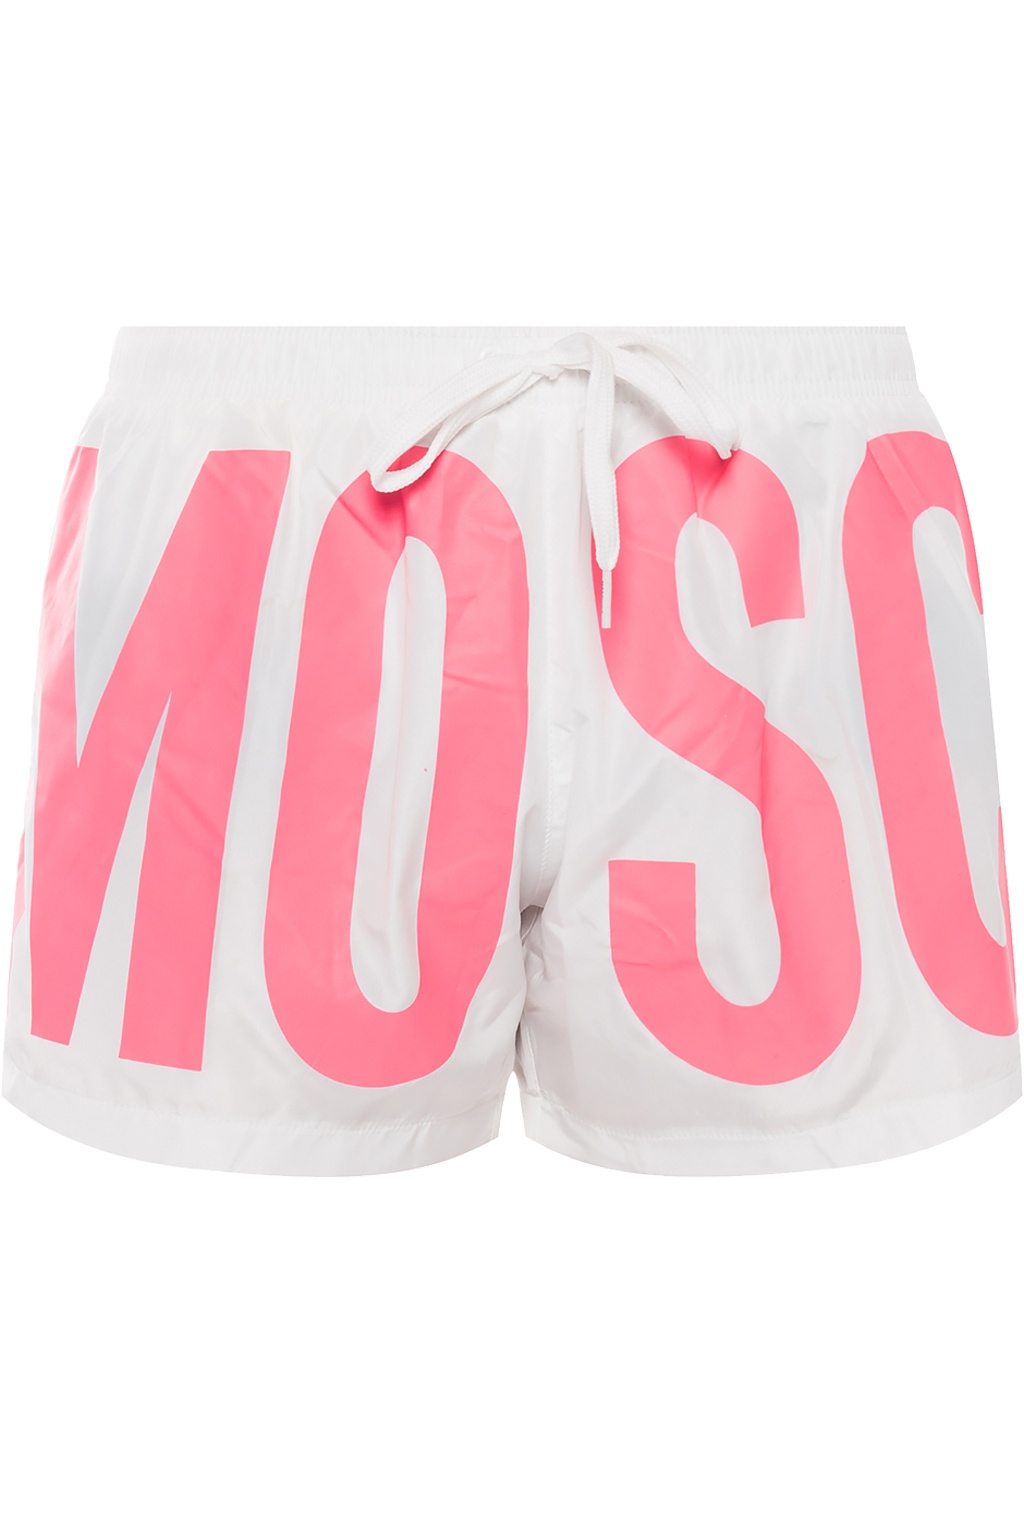 moschino swimwear men's